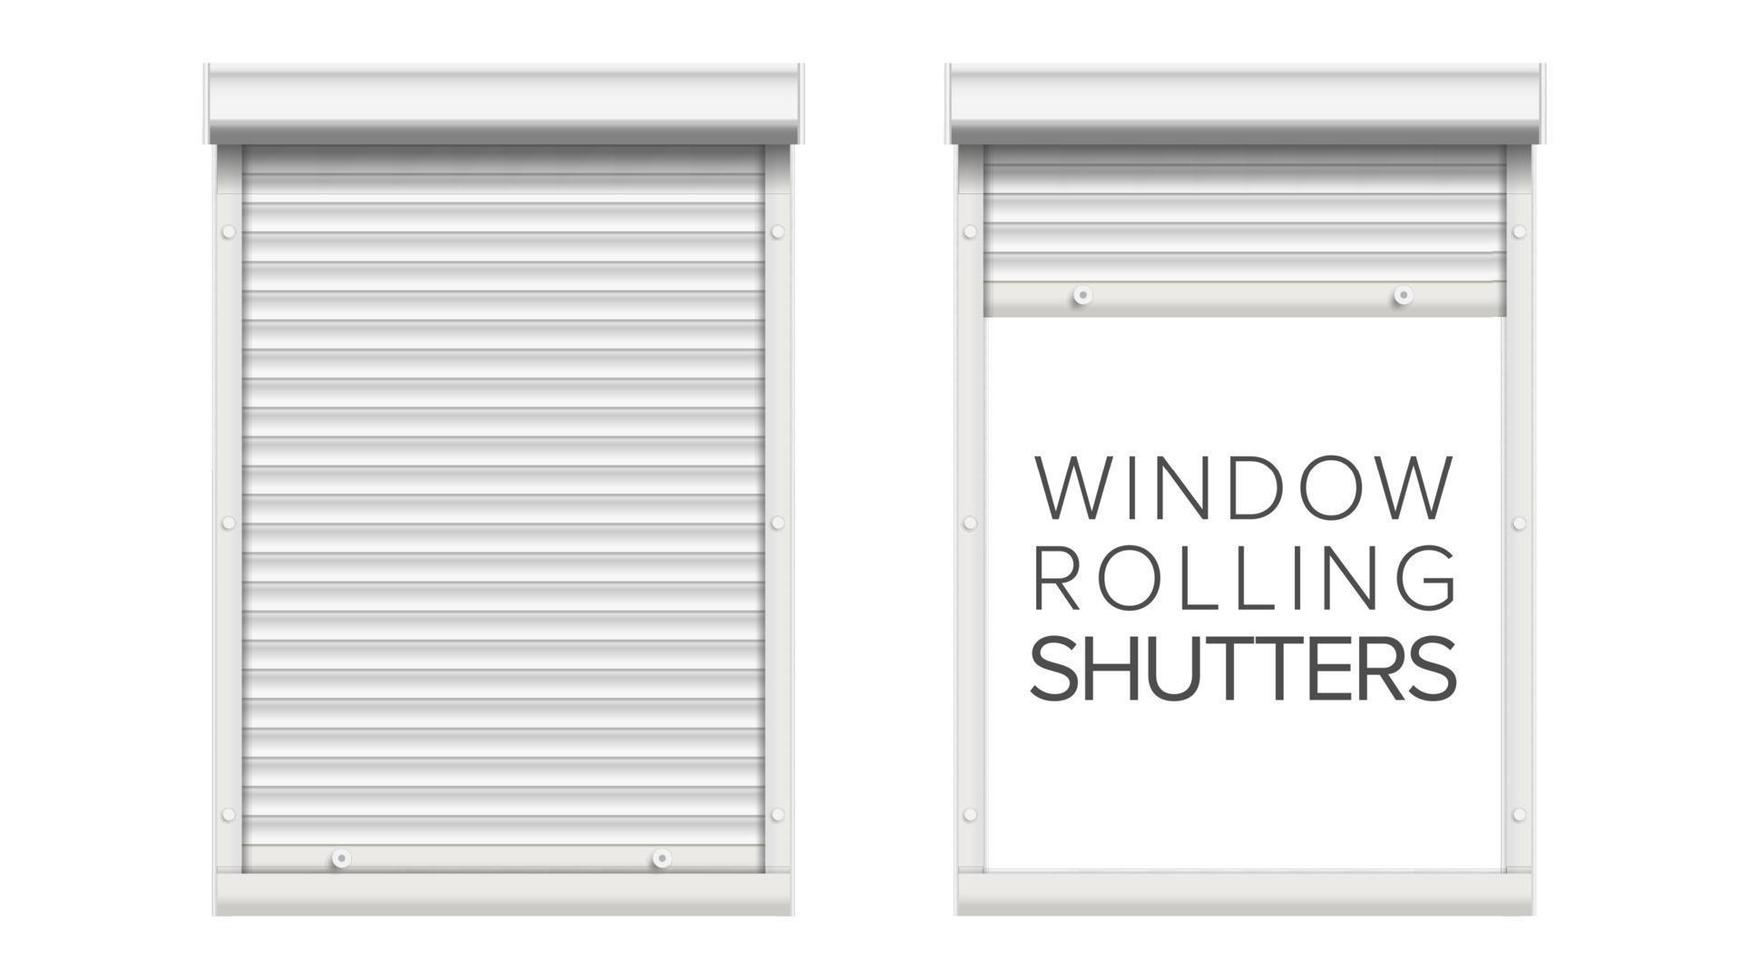 janela com vetor de persianas. aberto e fechado. vista frontal. isolado na ilustração branca.